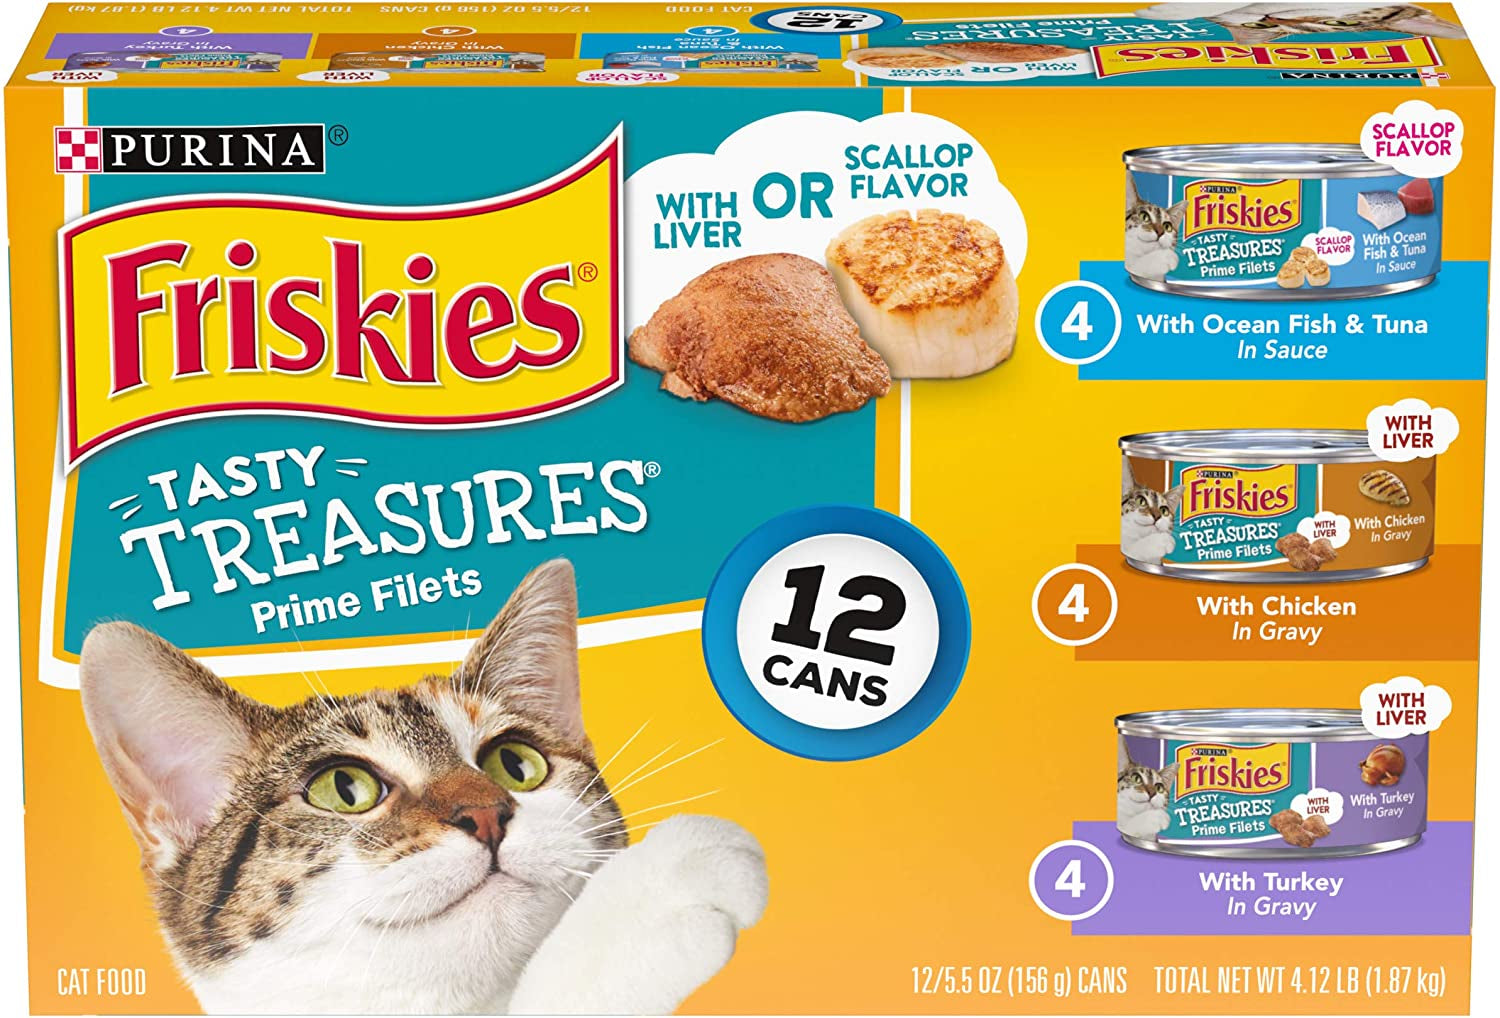 Tasty Treasures Adult Wet Cat Food Variety Pack